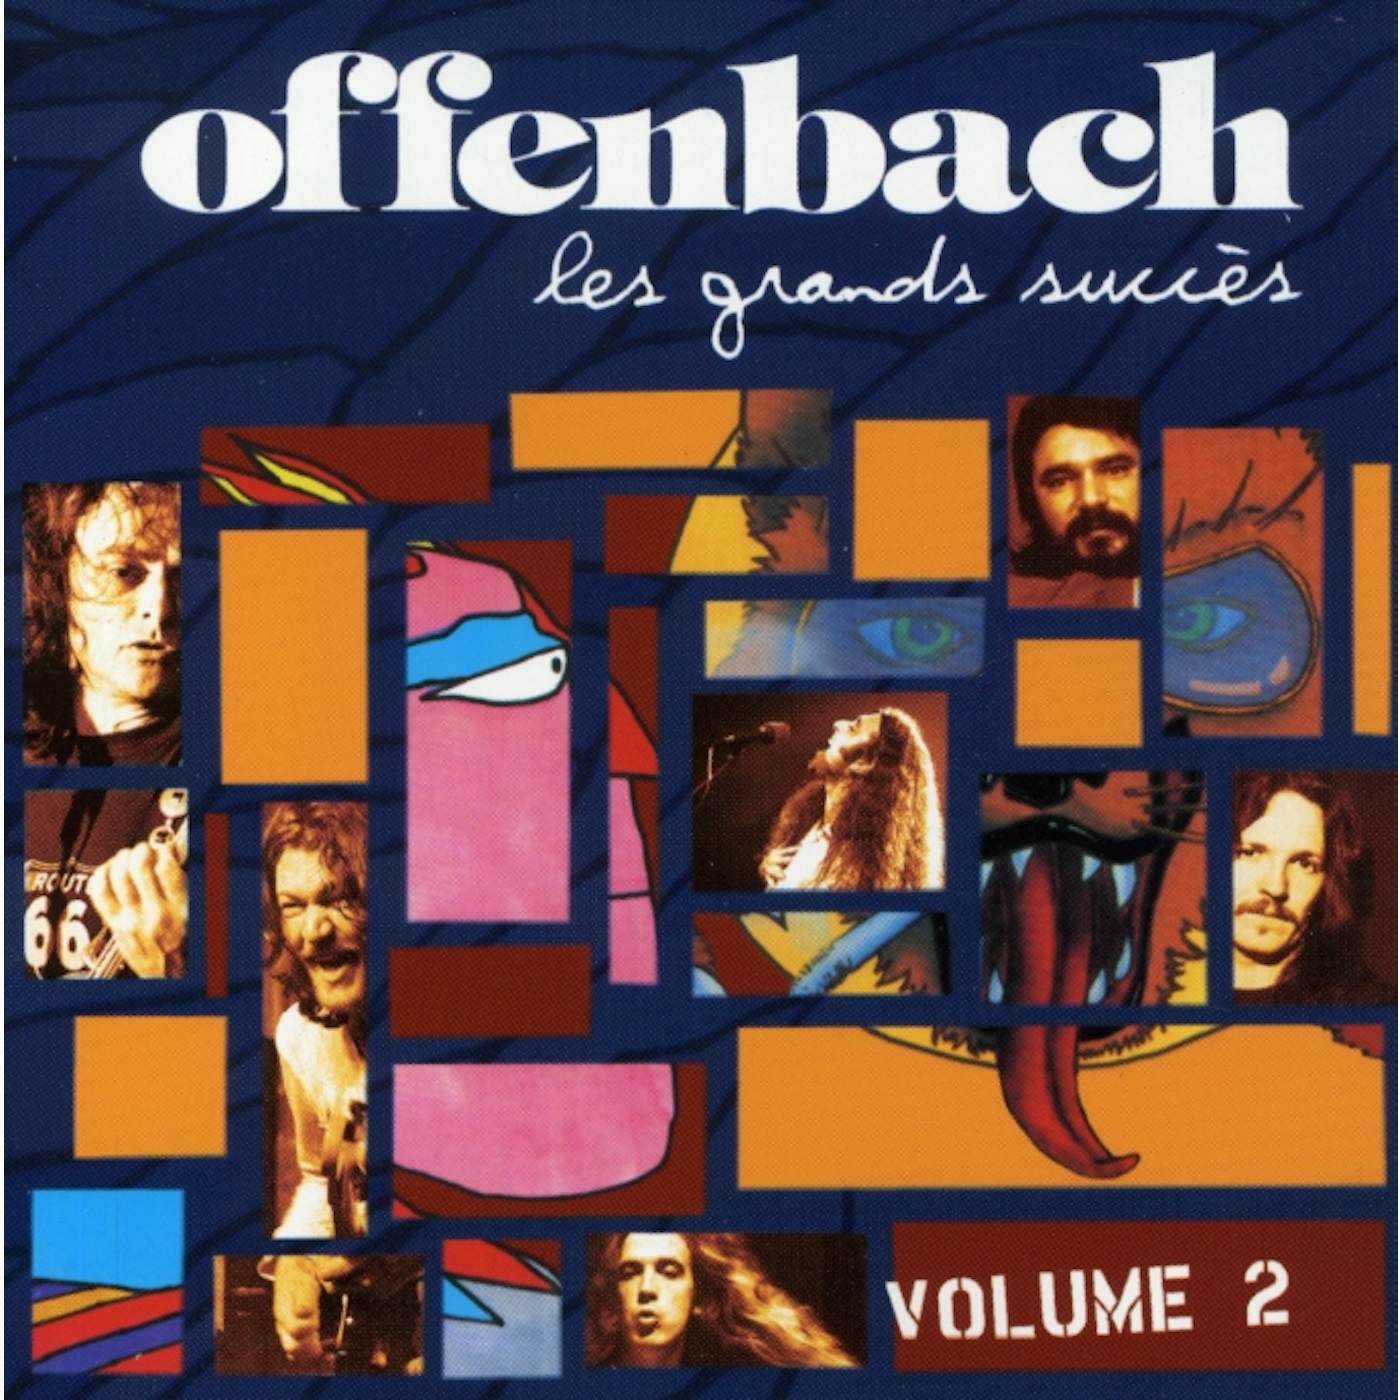 Offenbach LES GR&S SUCCES CD